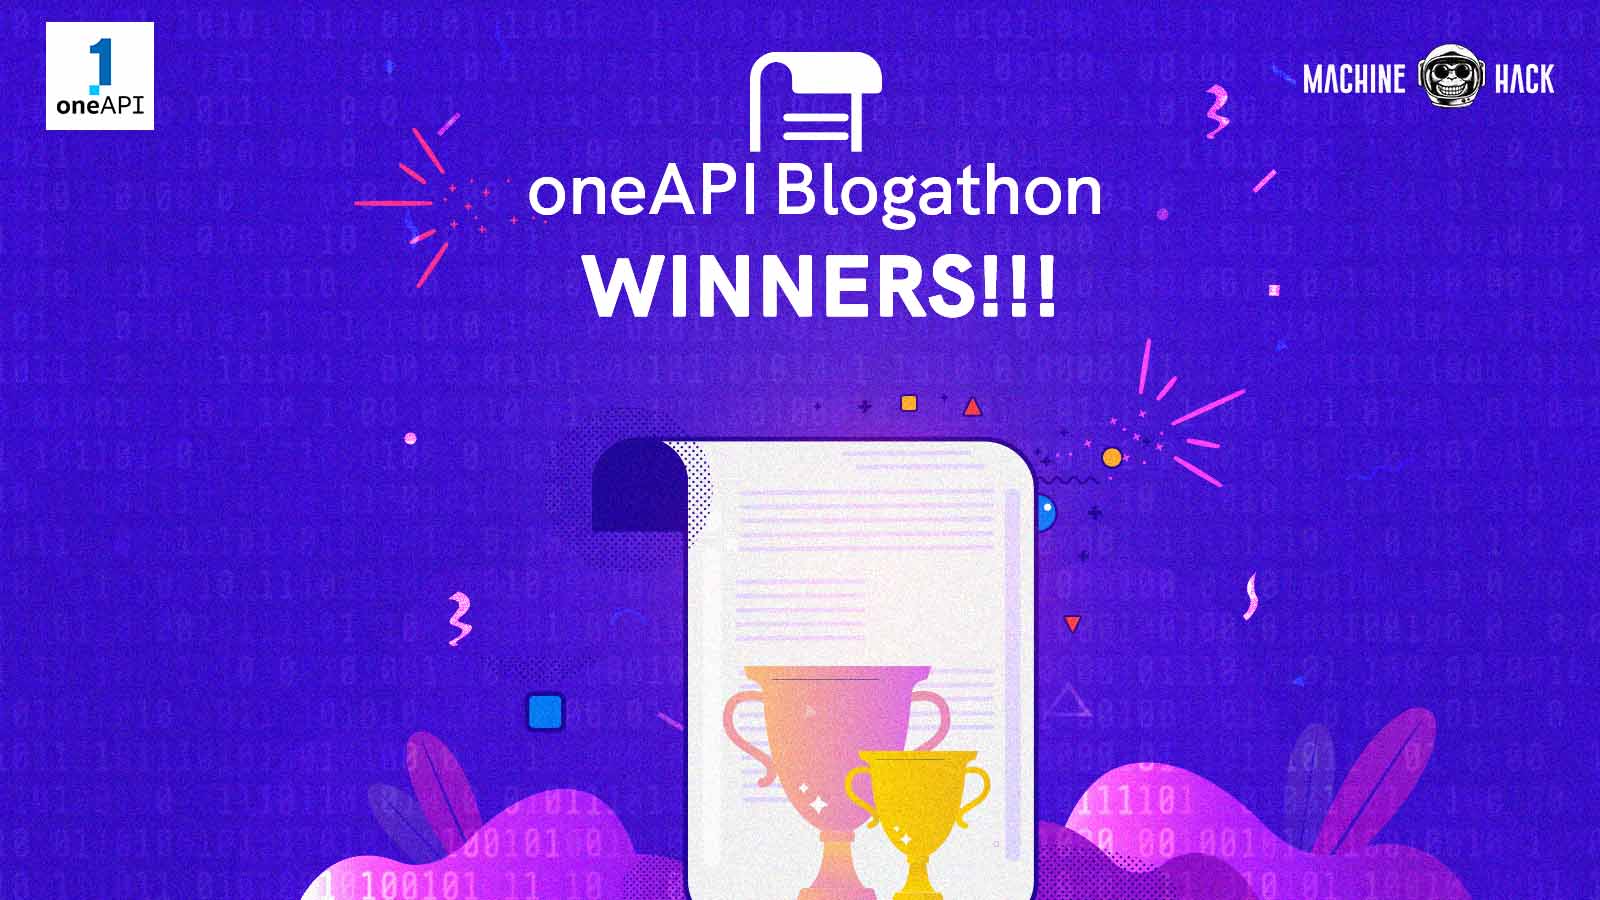 Intel® announces oneAPI Blogathon contest winners